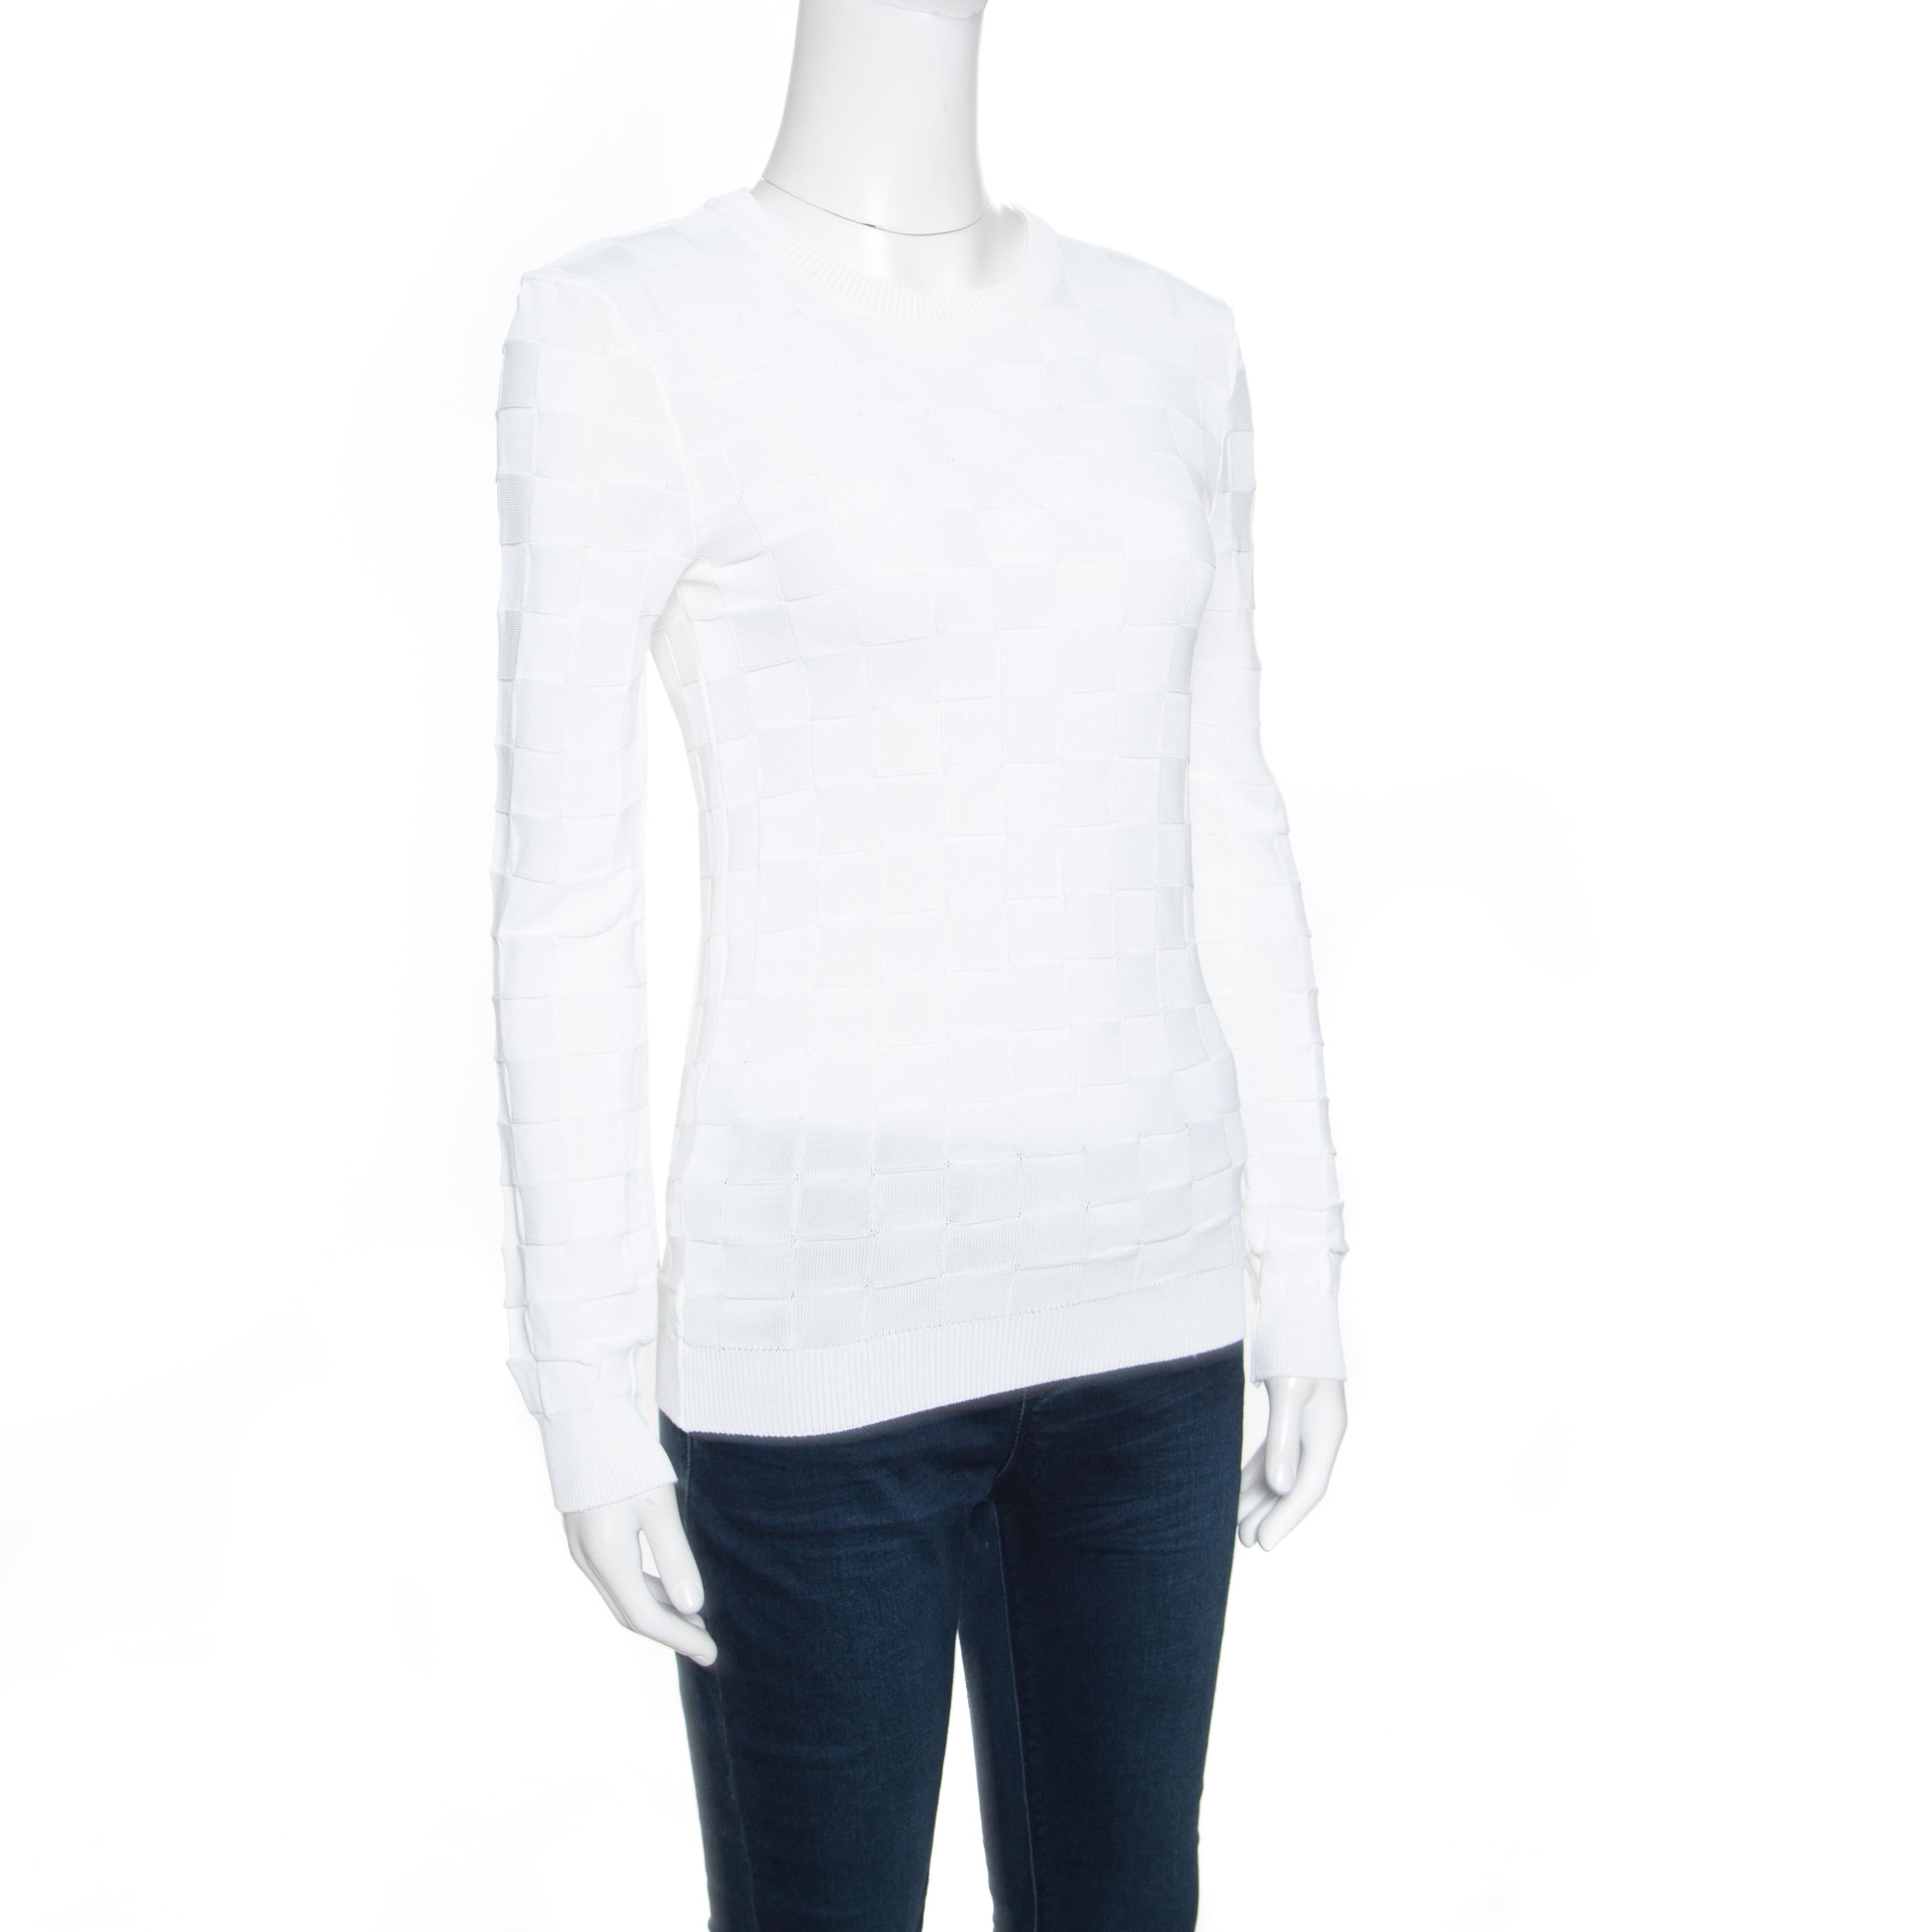 Balmain ist bekannt dafür, alles zu kreieren, was schick, edel und sehr modern ist! Dieser weiße Pullover besteht aus 100% Viskose und hat eine einfache, strukturierte Silhouette. Es ist mit einem karierten Strickmuster versehen und hat einen